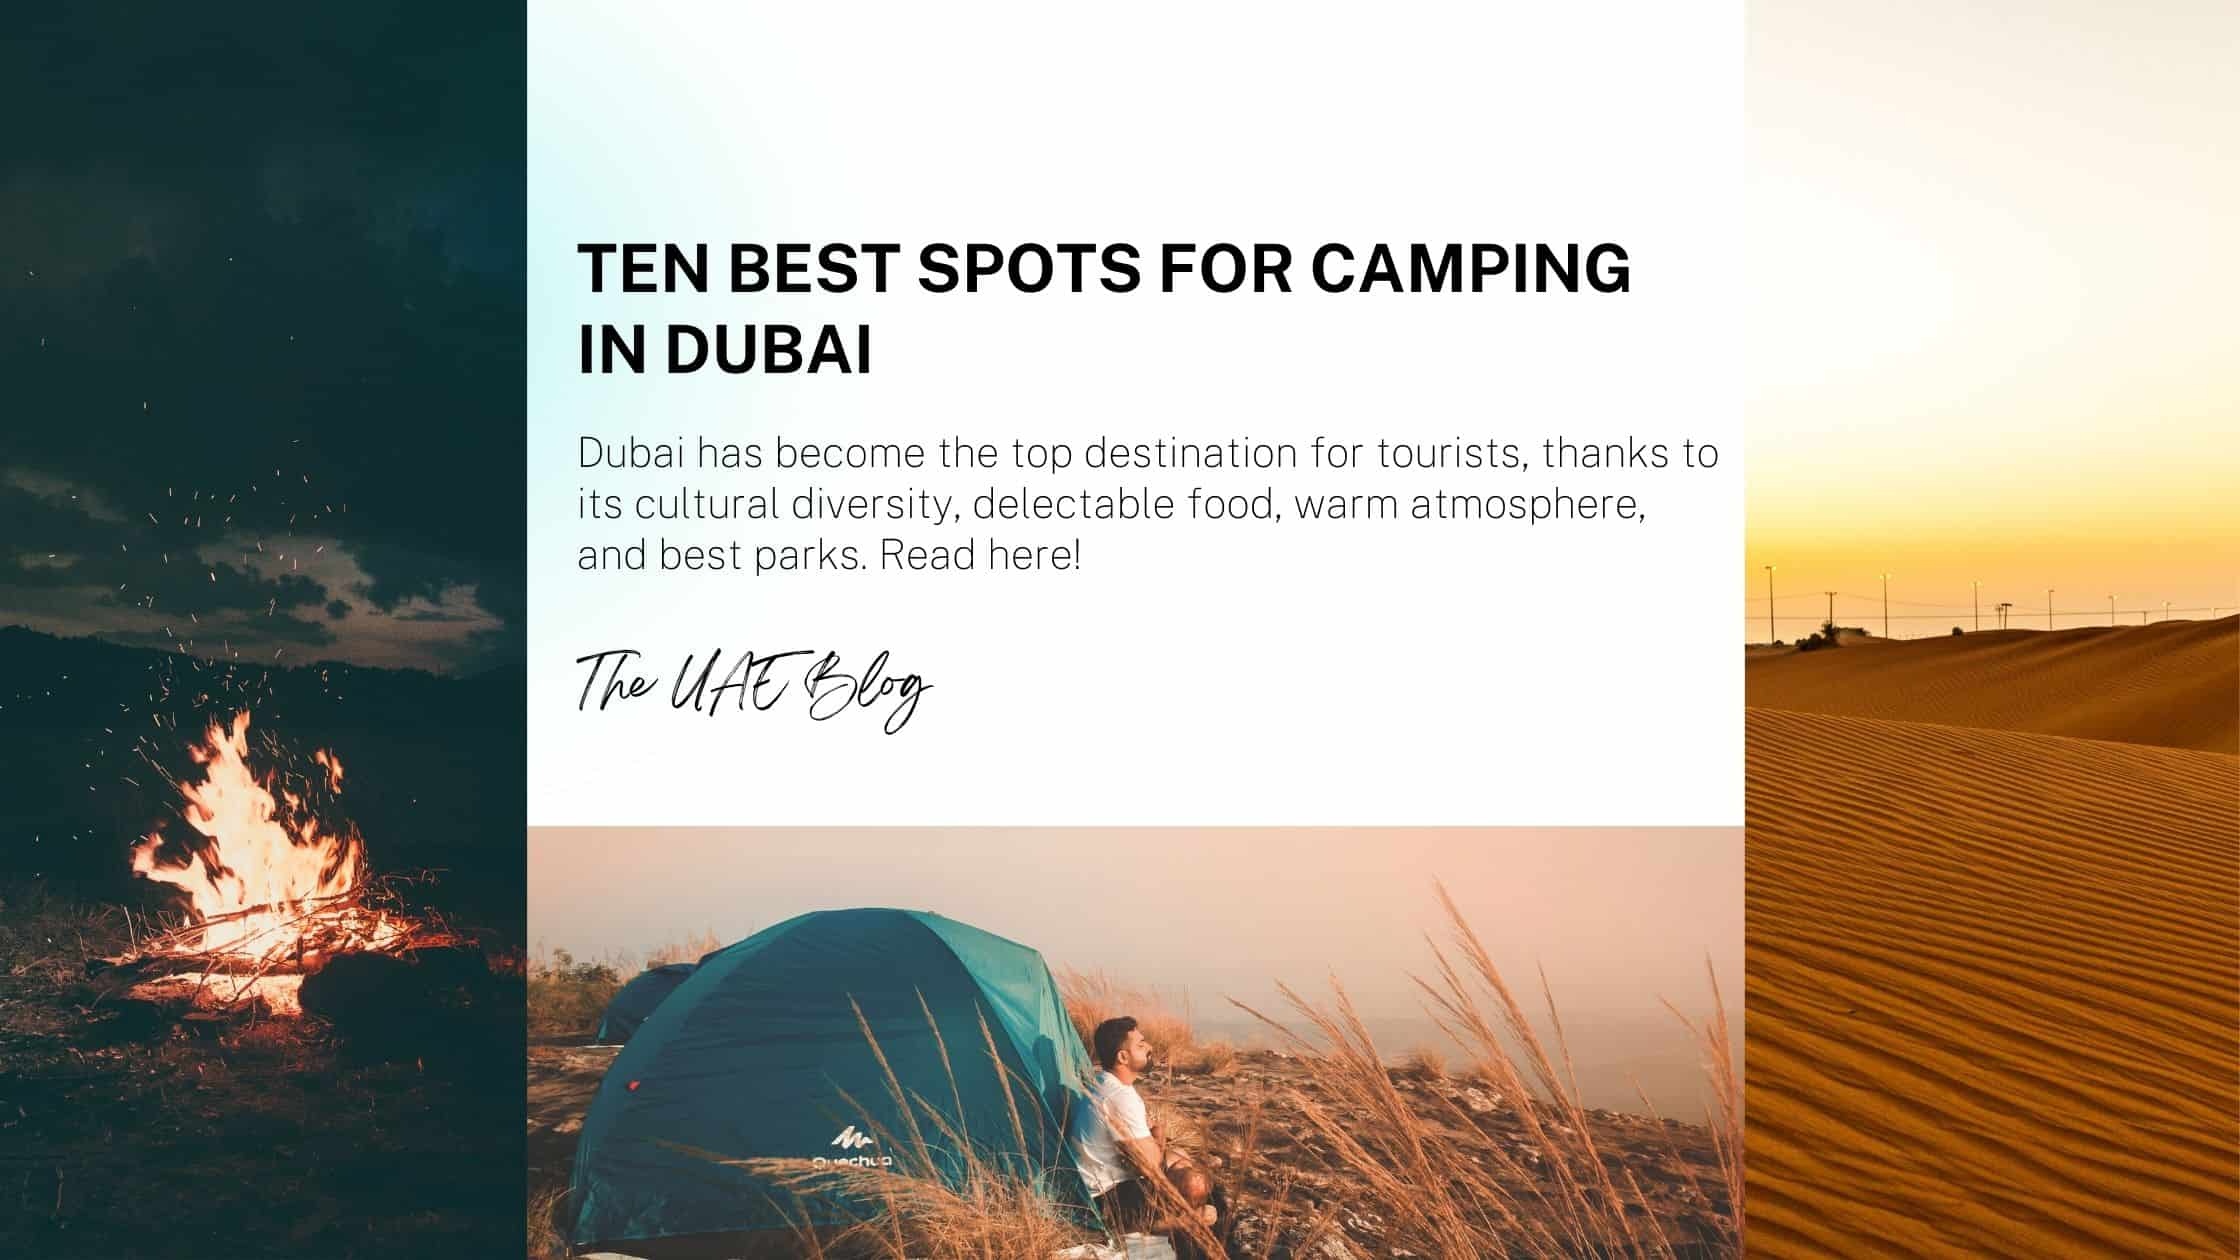 Ten best spots for camping in Dubai